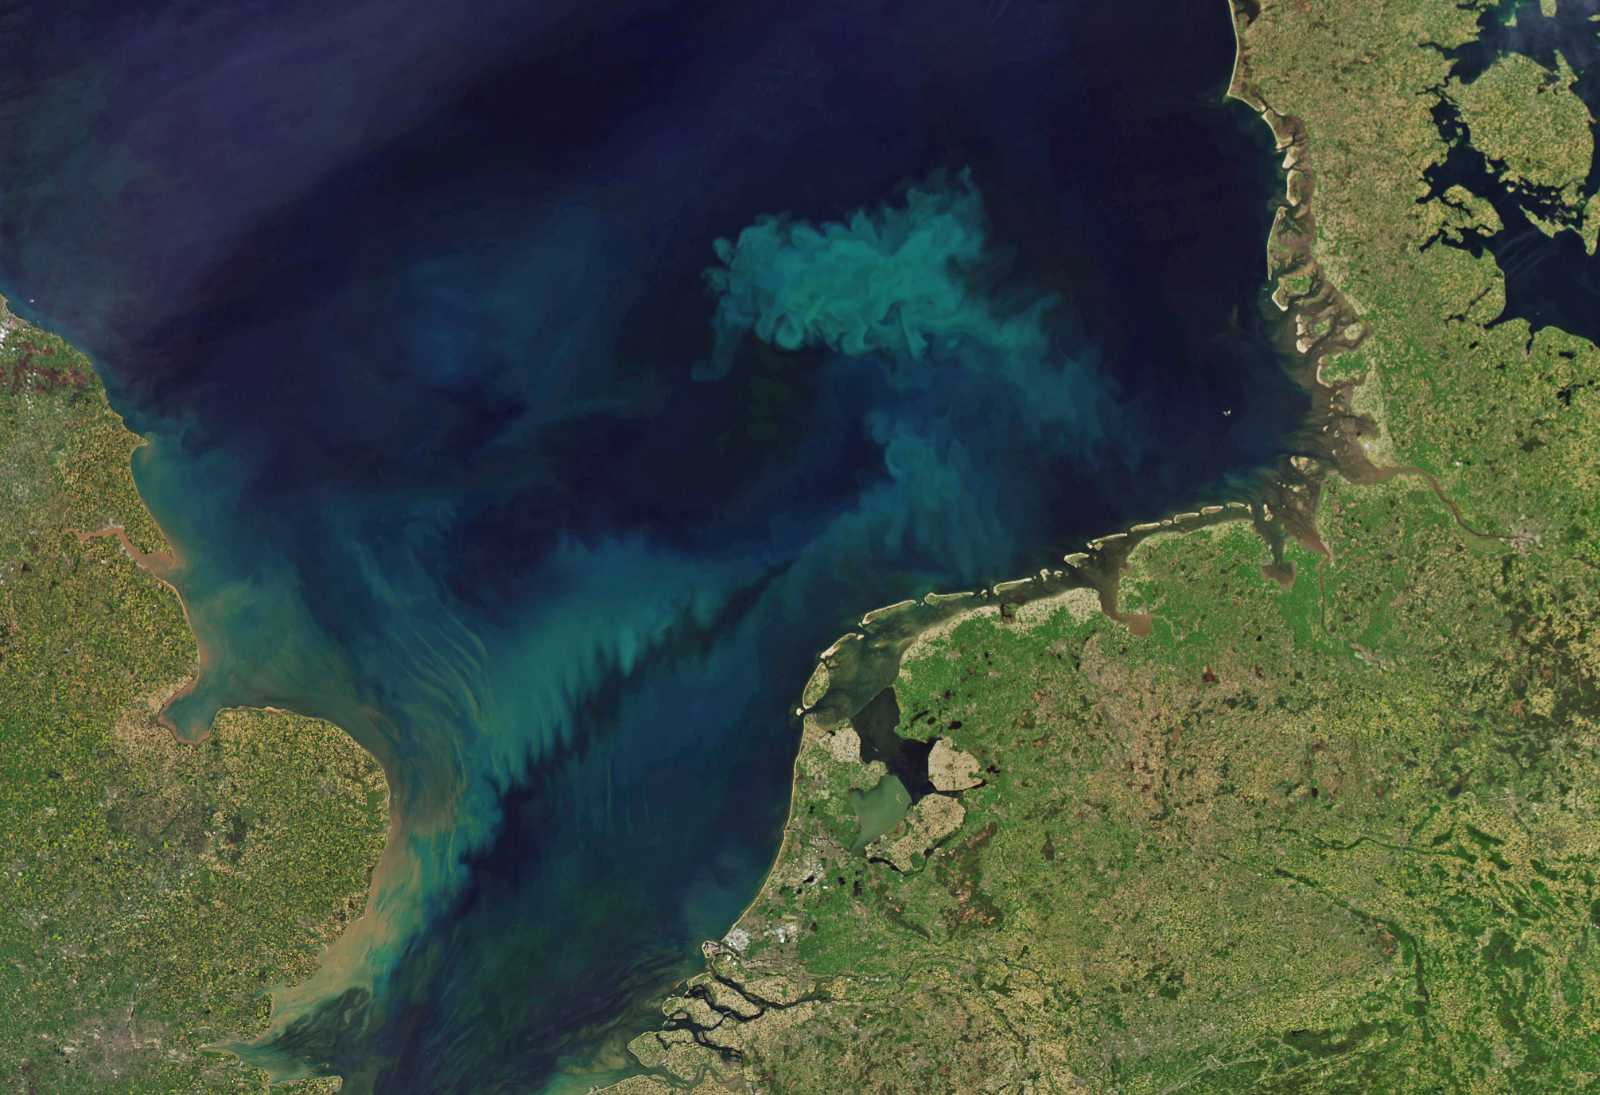 Farbenspiel aus CO2-aufnehmendem Phytoplankton in der Nordsee.